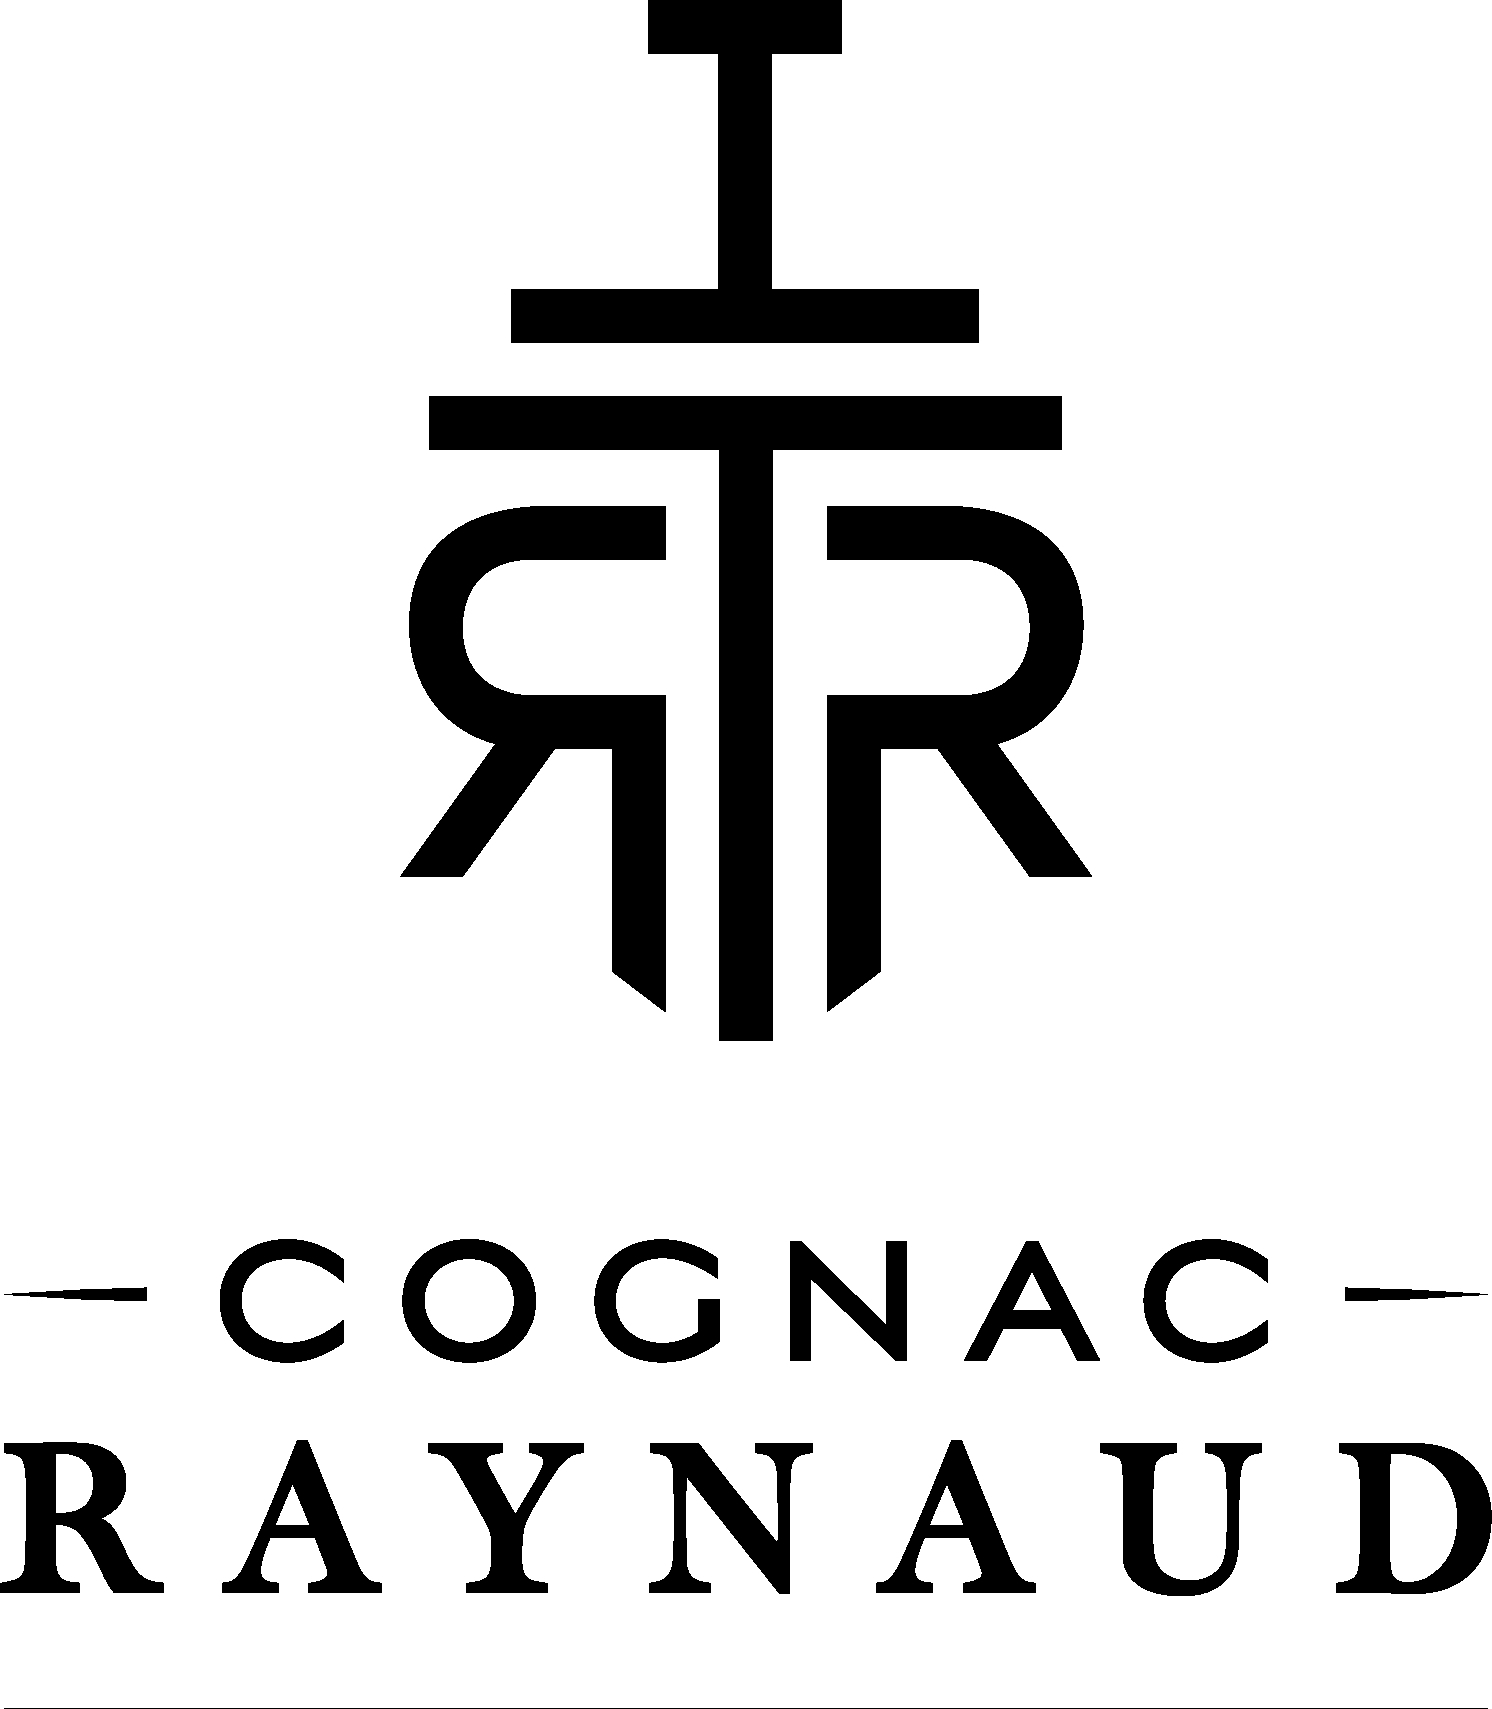 RAYNAUD Cognac